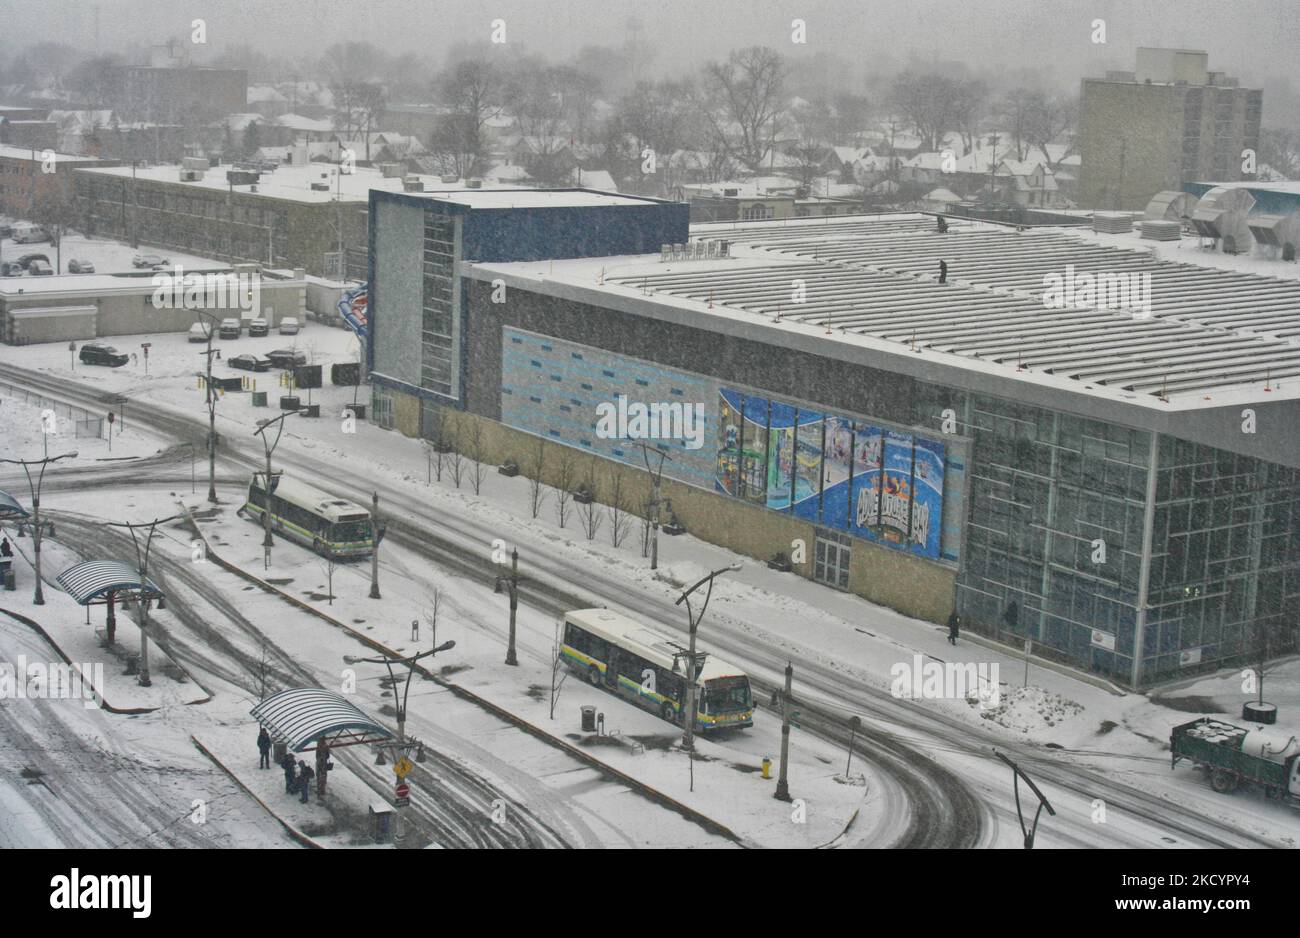 Am 3. März 2015 stürzte der Schneesturm große Mengen an Schnee, Schnee und eiskalten Regen auf die Stadt Windsor in Ontario, Kanada. Dieser Schneesturm warf zwischen 5-10 Zentimetern Schnee über weite Gebiete im Süden Ontarios. Der Schnee änderte sich später in eiskalten Regen, der mehrere Stromausfälle in der Region verursachte. (Foto von Creative Touch Imaging Ltd./NurPhoto) Stockfoto